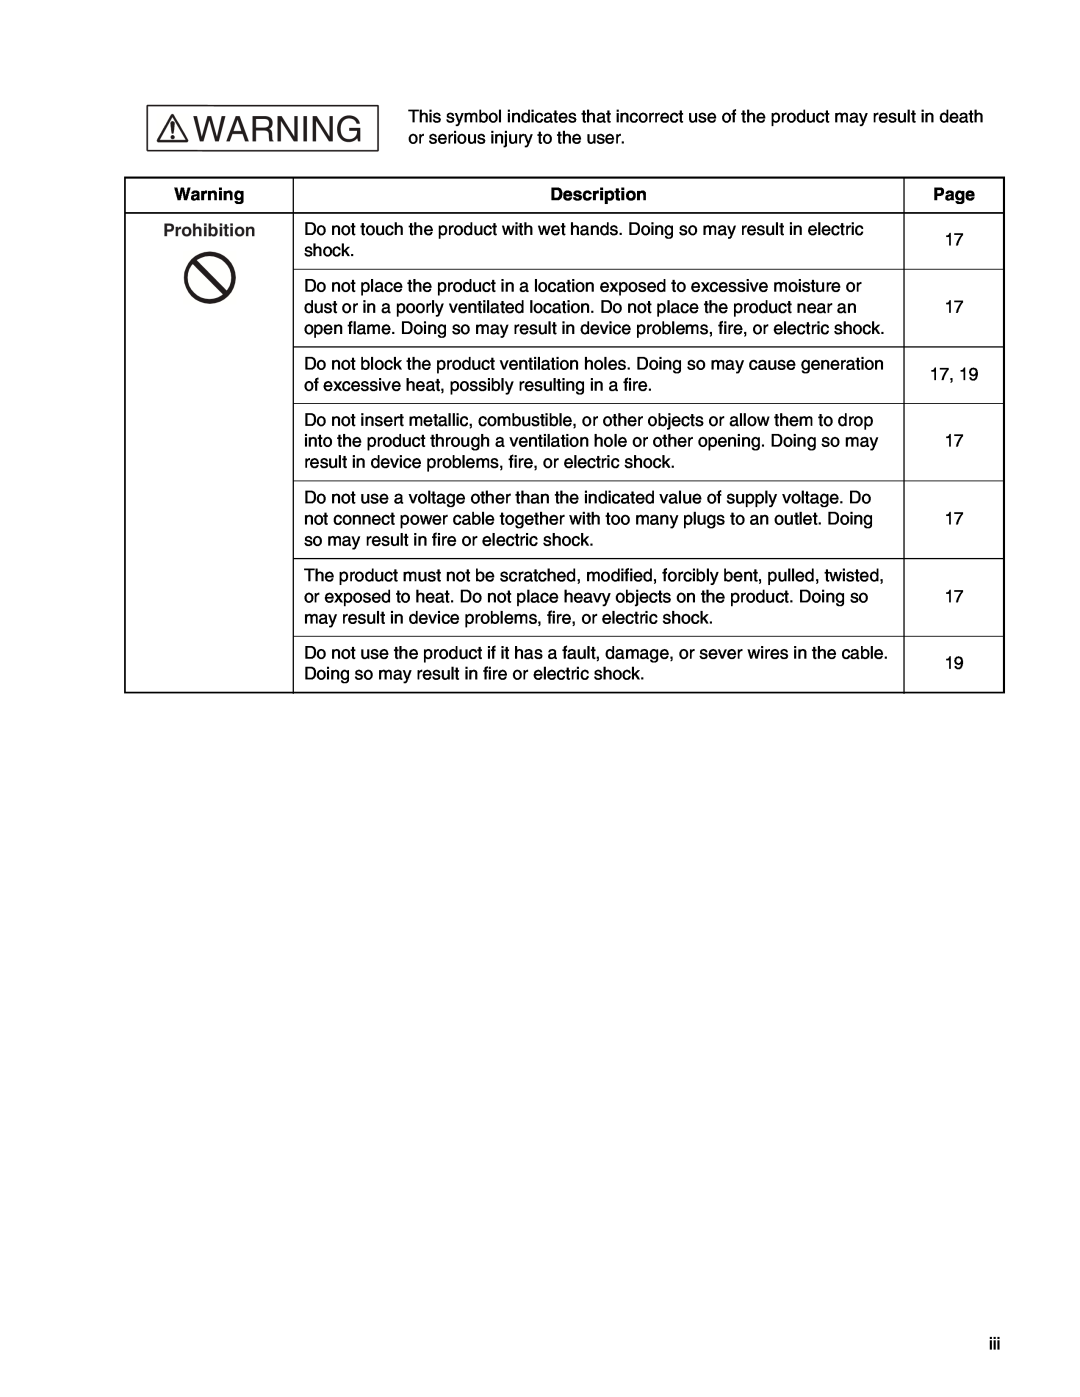 Fujitsu MB2147-01 manual Description, Page, Prohibition 